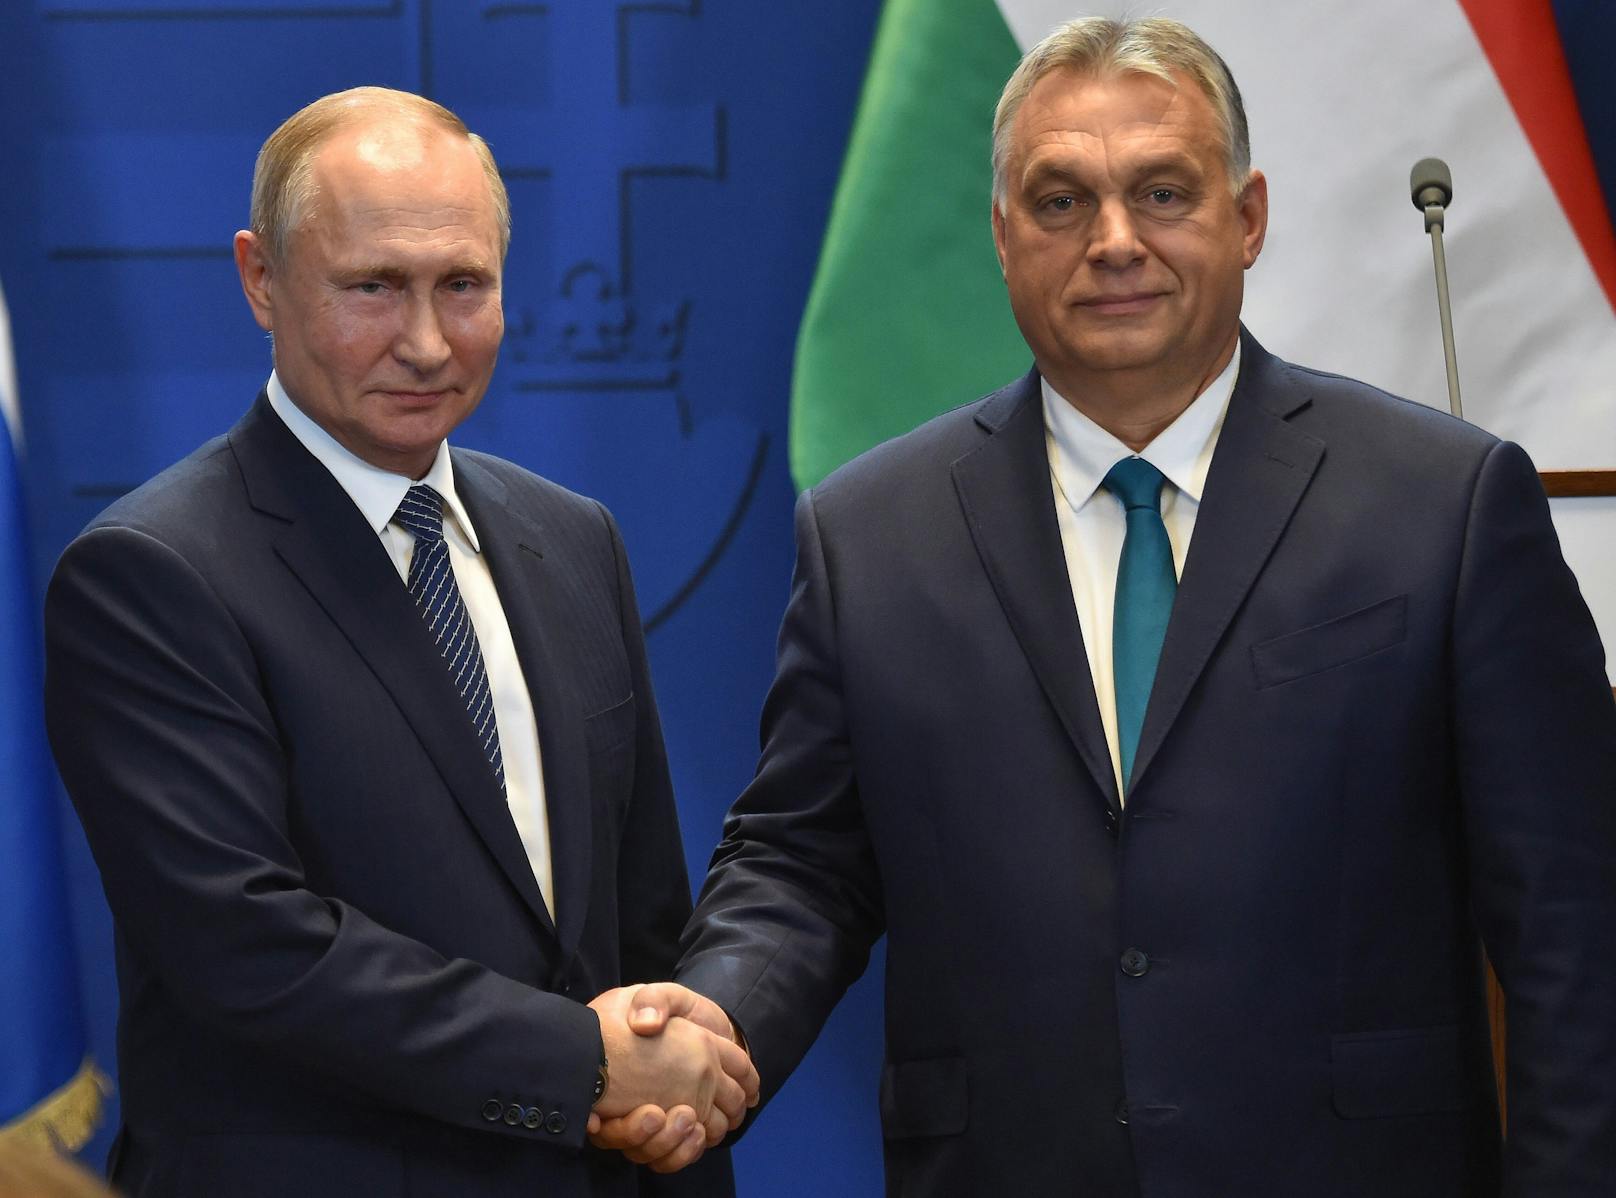 Viktor Orban gilt als Verbündeter des russischen Präsidenten Wladimir Putin. Hier ein Foto beider aus dem Jahr 2019.